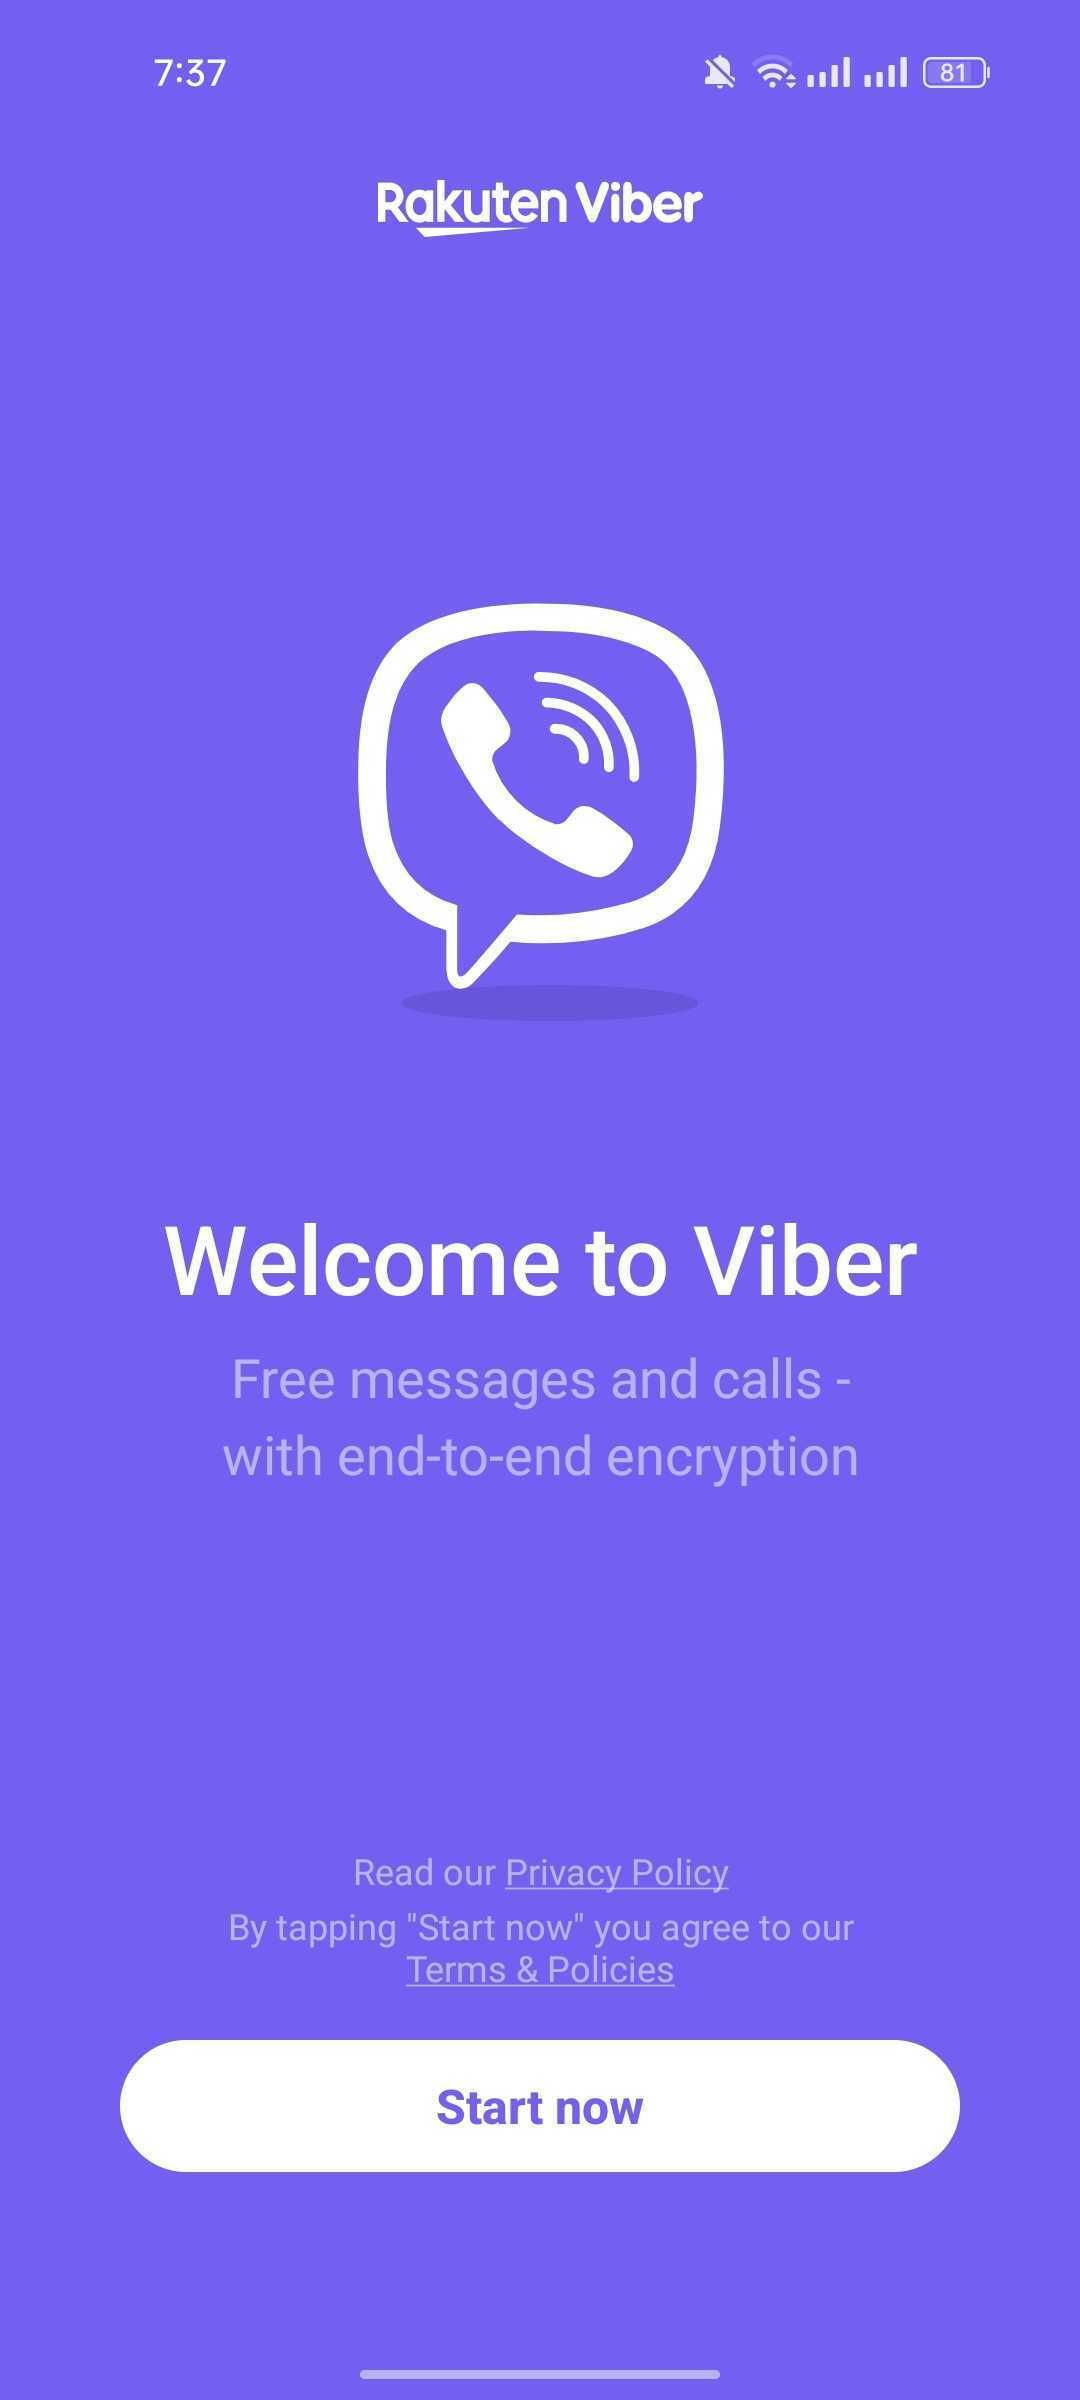 Sign up on Viber